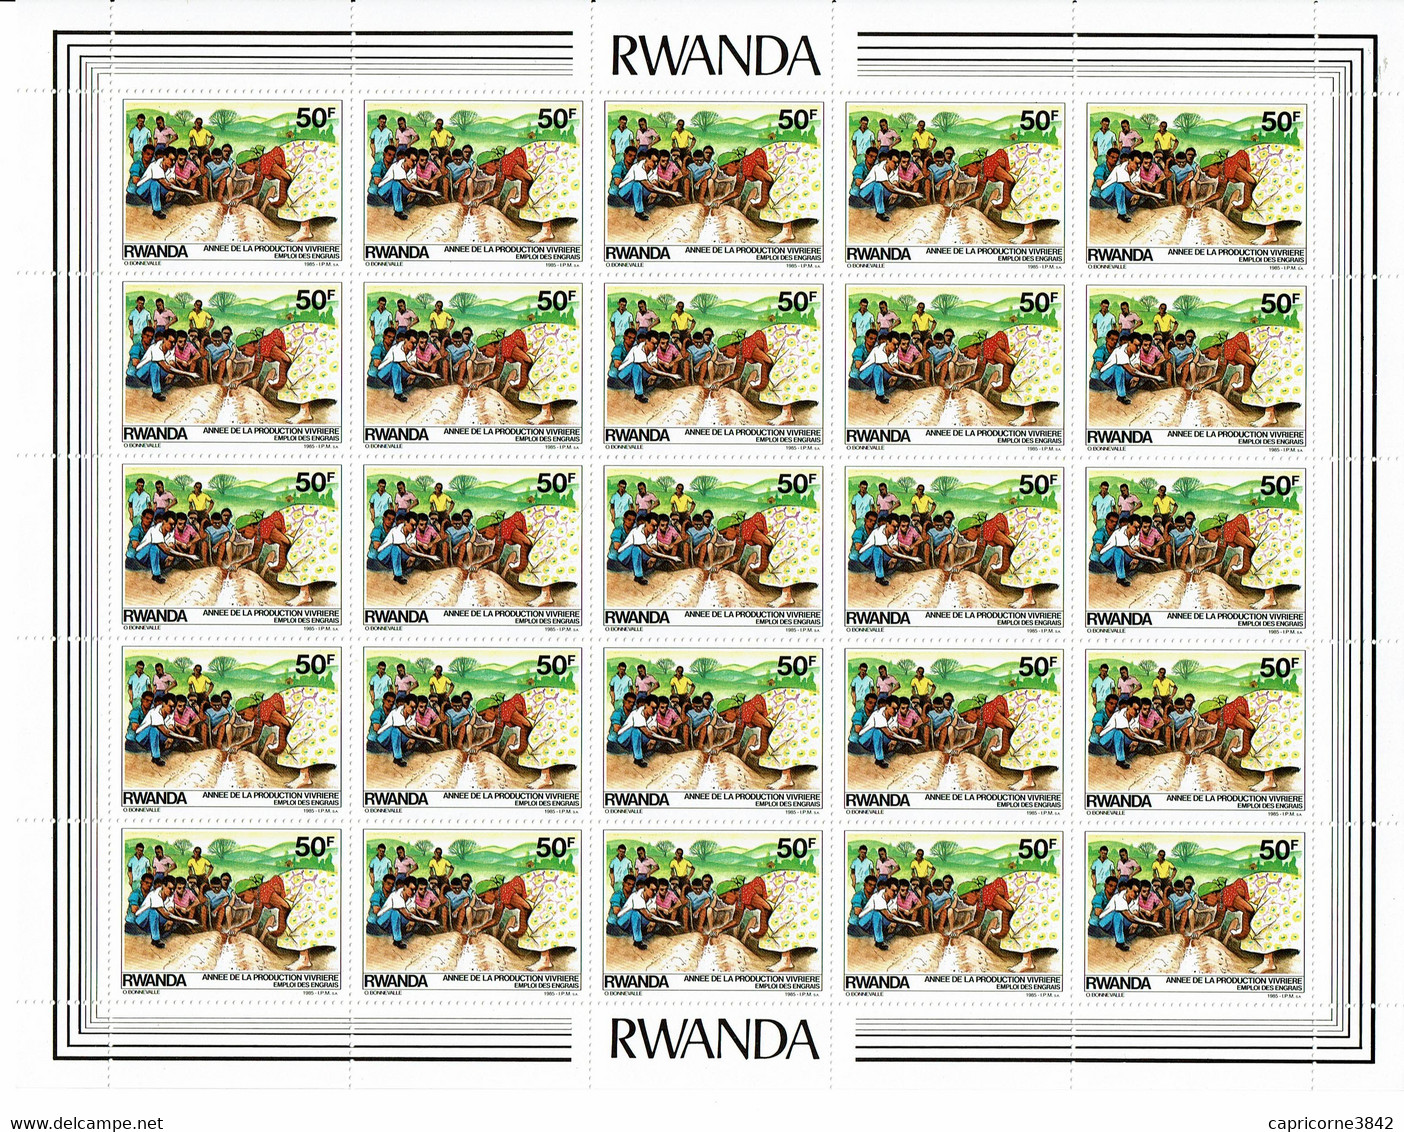 1985 - Rwanda - ANNEE DE LA PRODUCTION VIVRIERE - EMPLOI DES ENGRAIS - Feuille Entière De 25 Tp N° 1170 - Unused Stamps